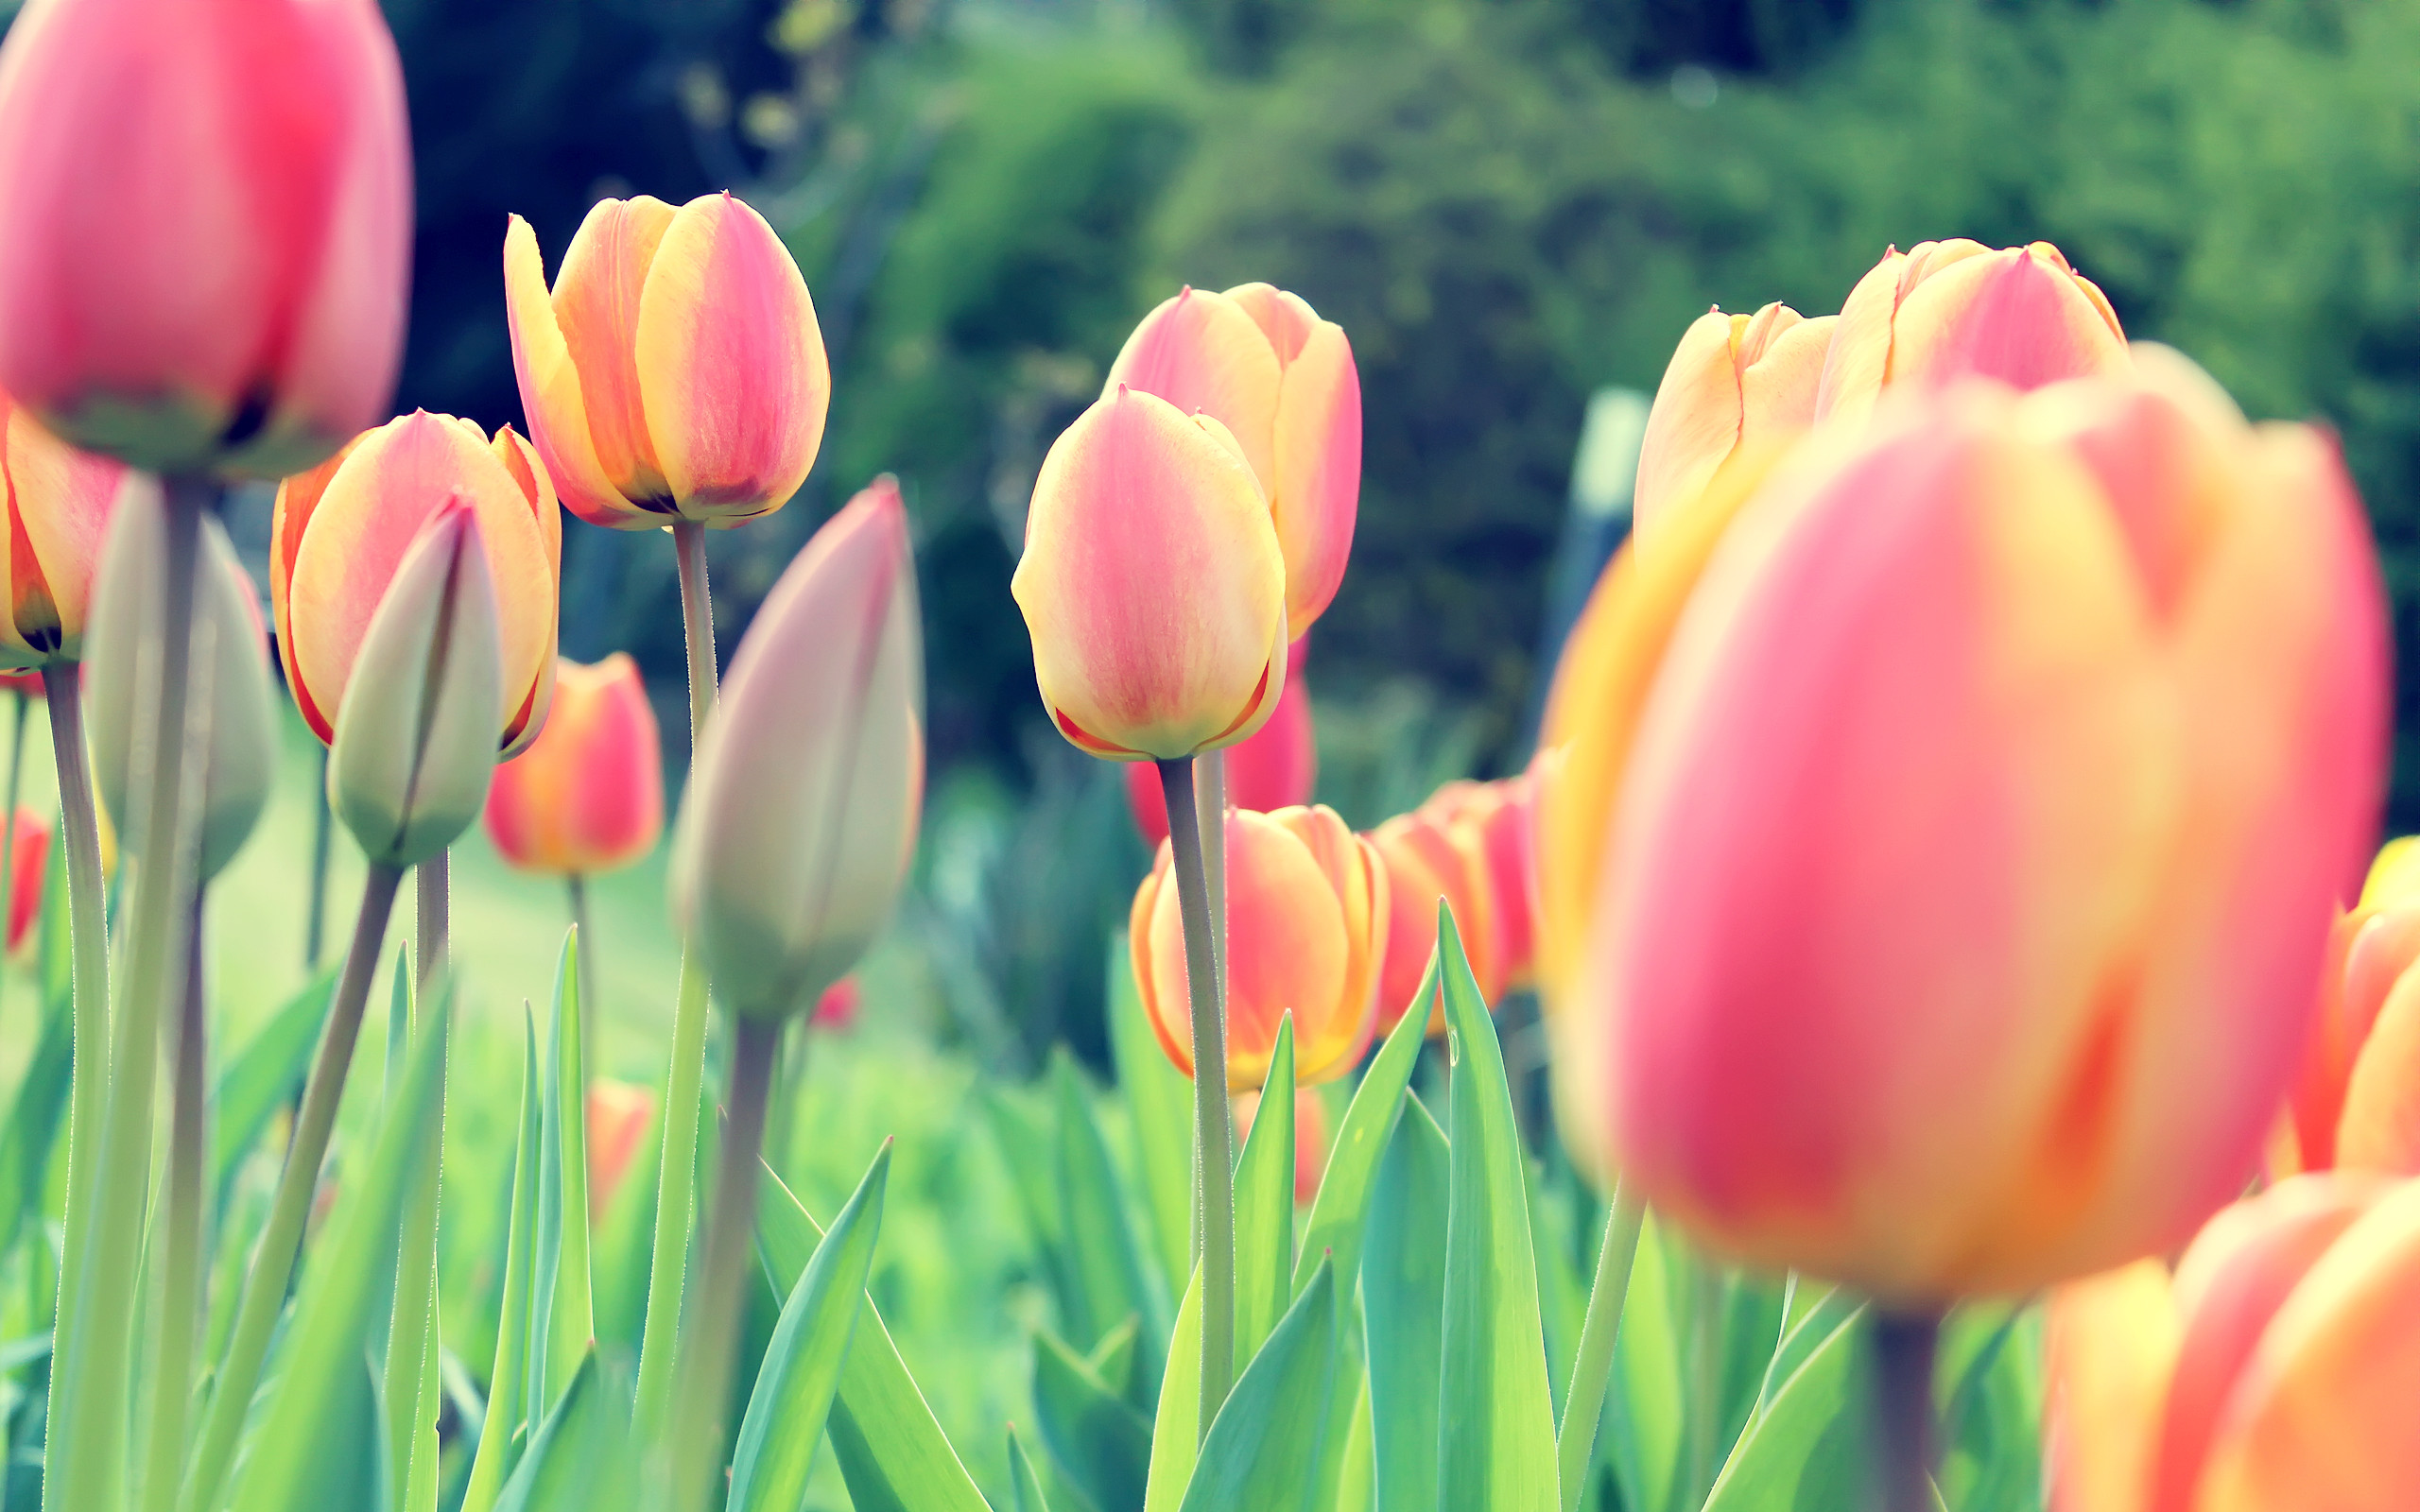 Hình nền hoa tulip sẽ mang đến cho bạn một cảm giác thư thái và tươi mới cho màn hình thiết bị của bạn. Những bức ảnh hoa tulip sẽ làm cho màn hình trở nên sống động và đầy màu sắc. Hãy cùng trang trí cho màn hình của bạn với những hình nền hoa tulip đẹp tuyệt vời này.